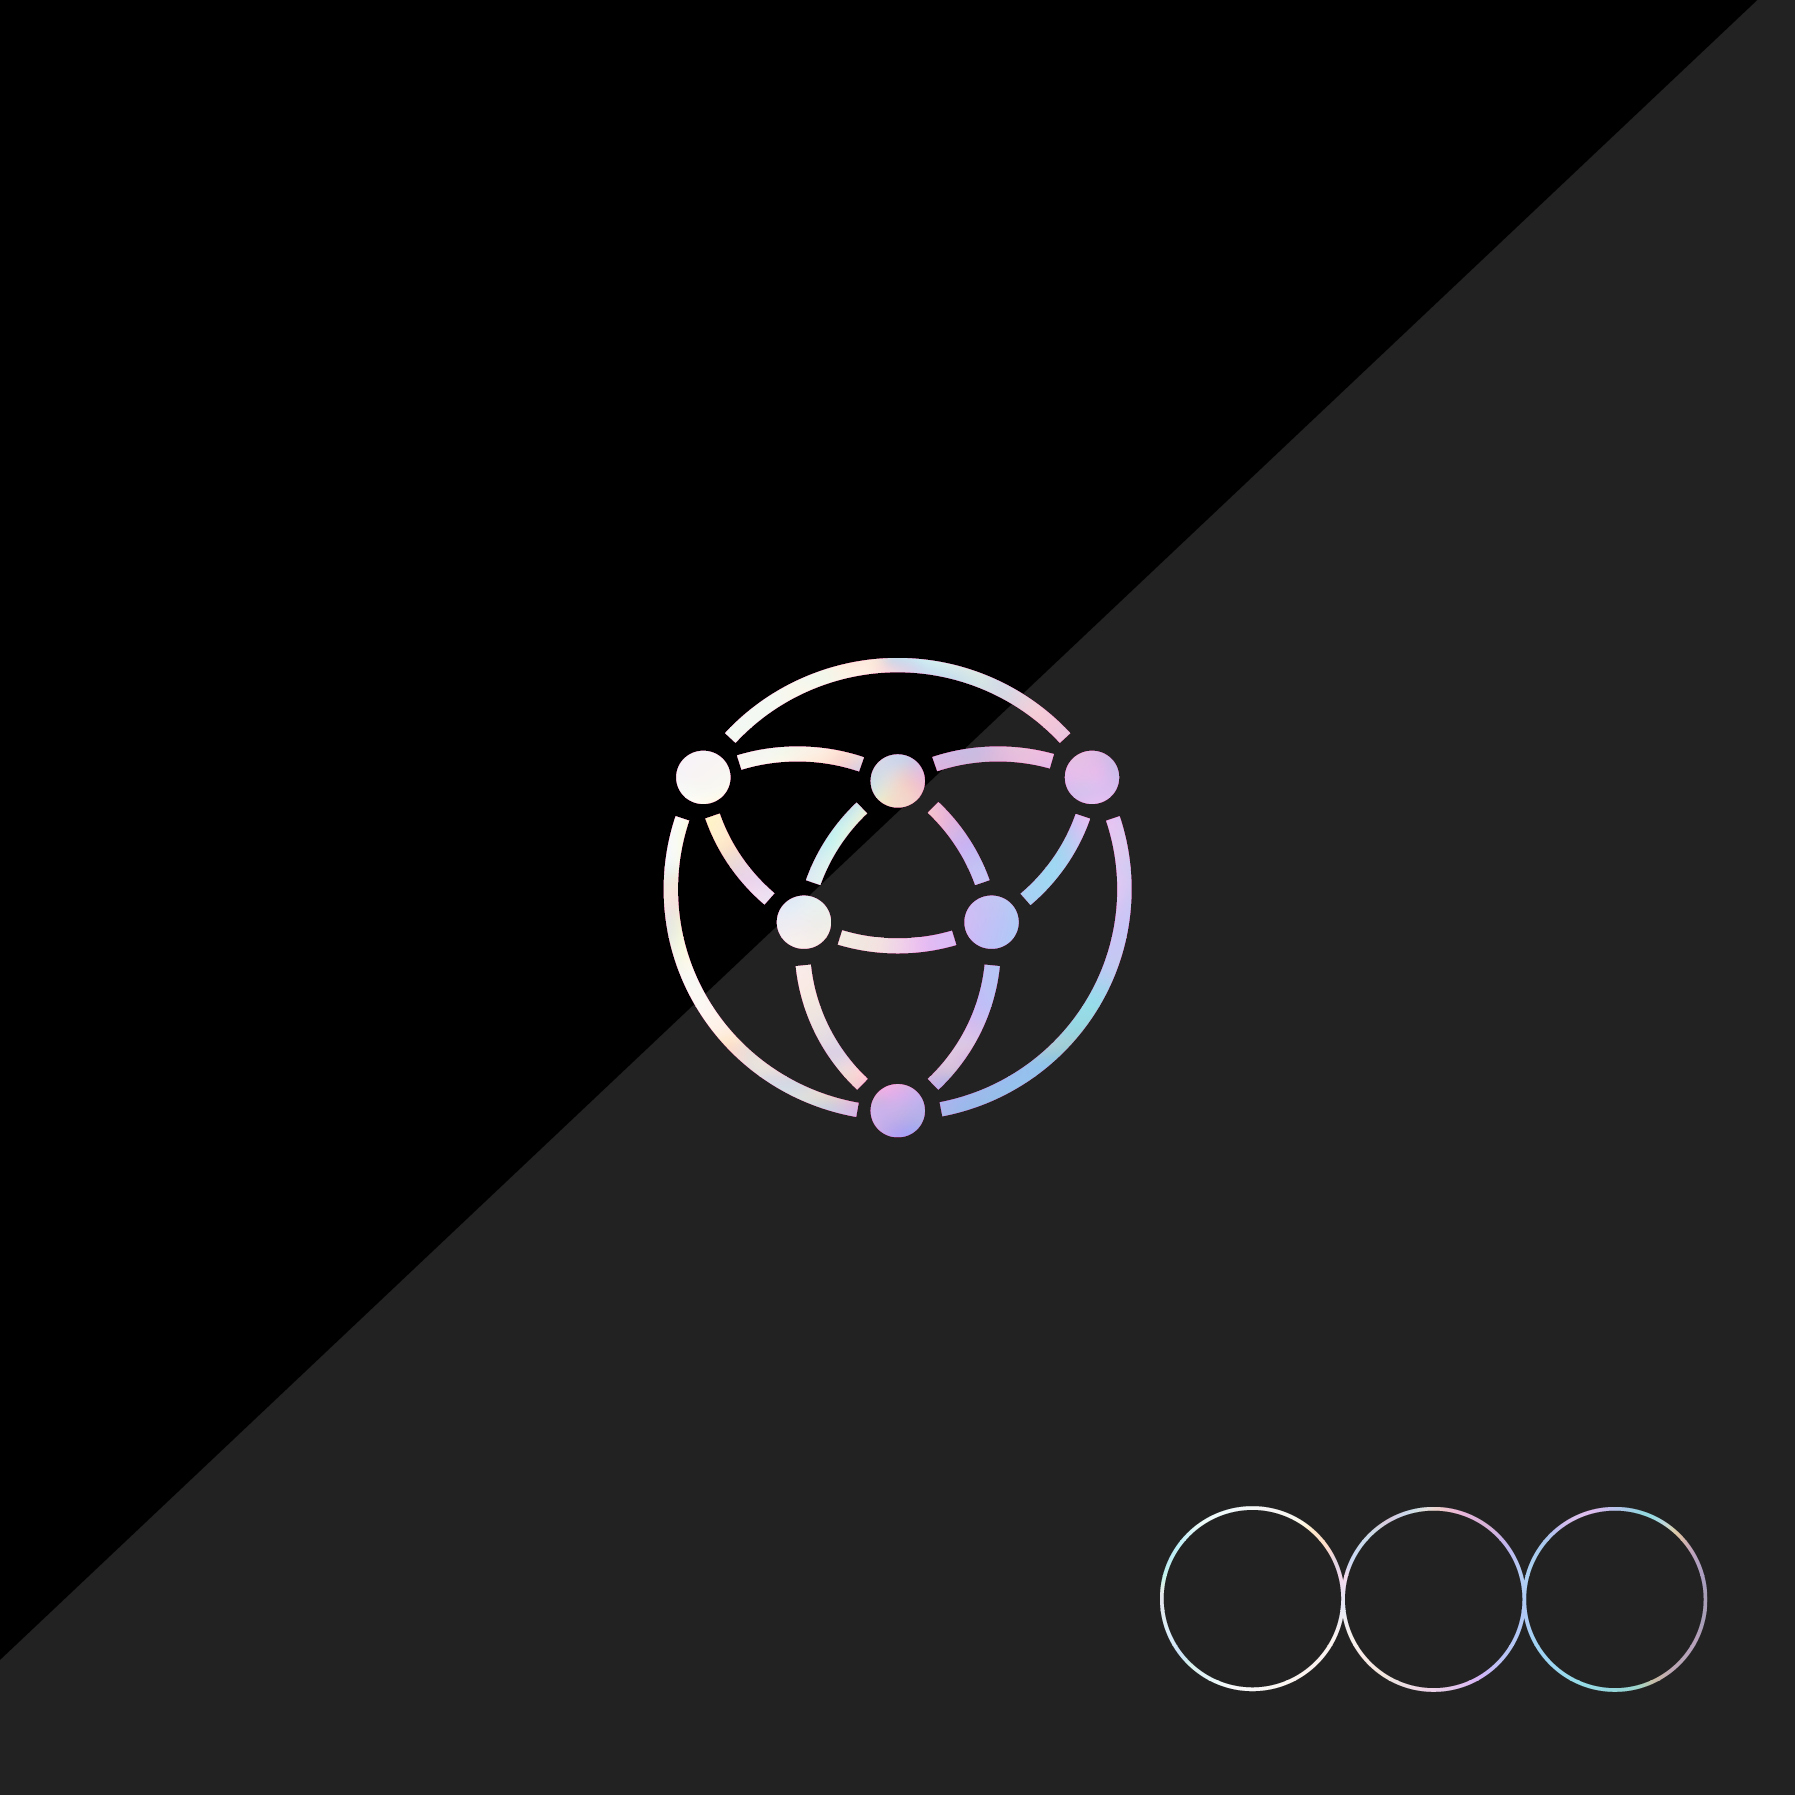 [全款 裸专][视频签售活动] [2CD 套装] OnlyOneOf - [seOul cOllectiOn] (Glossy Black Ver. + Matte Black Ver.) _OnlyOneOf_Oxygen 